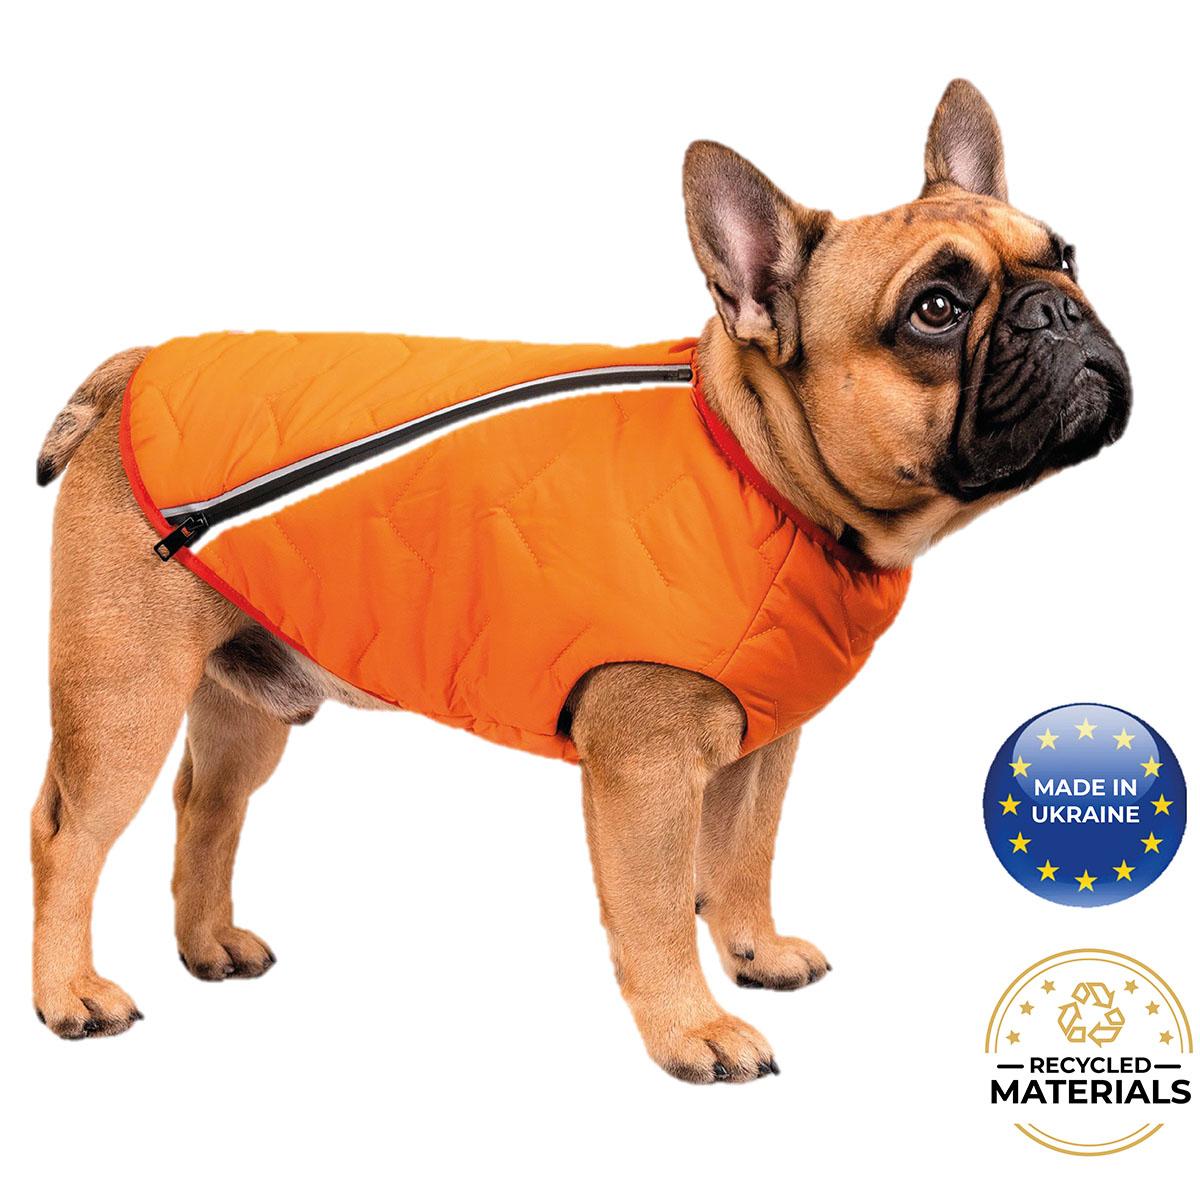 Bonne et Filou Sustainable Eco-Friendly Dog Jacket - Orange